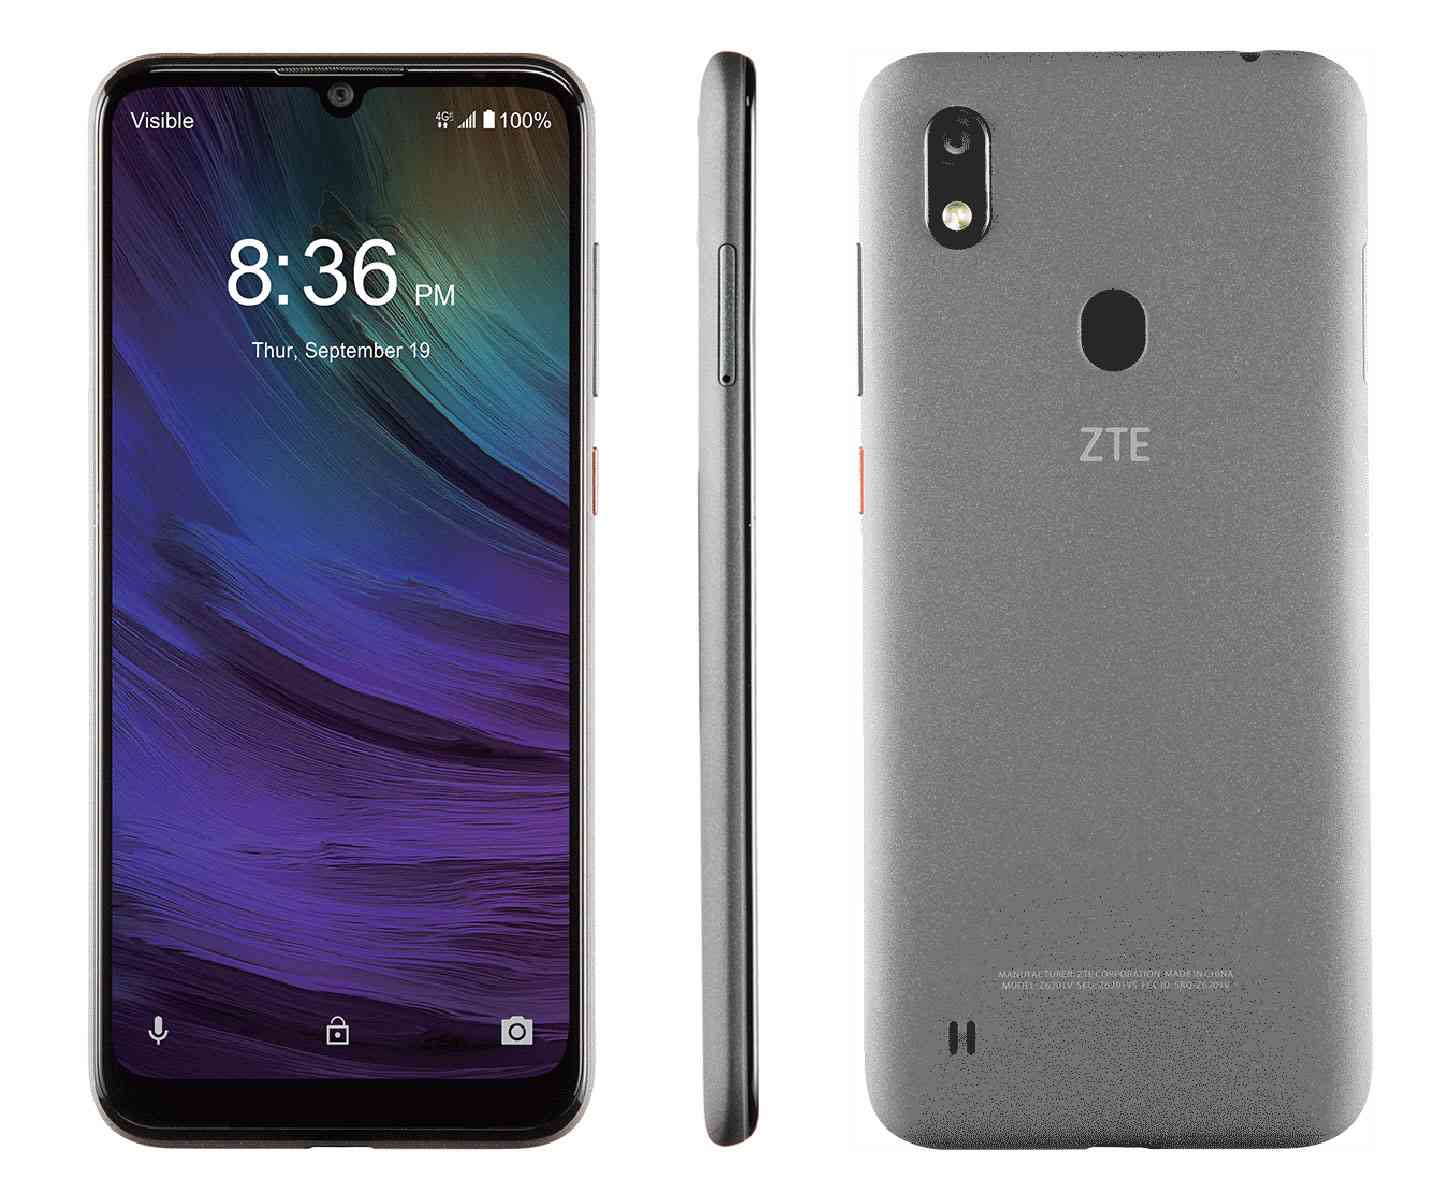 Oversigt over smartphonen ZTE Blade A7 Prime med nøglefunktioner